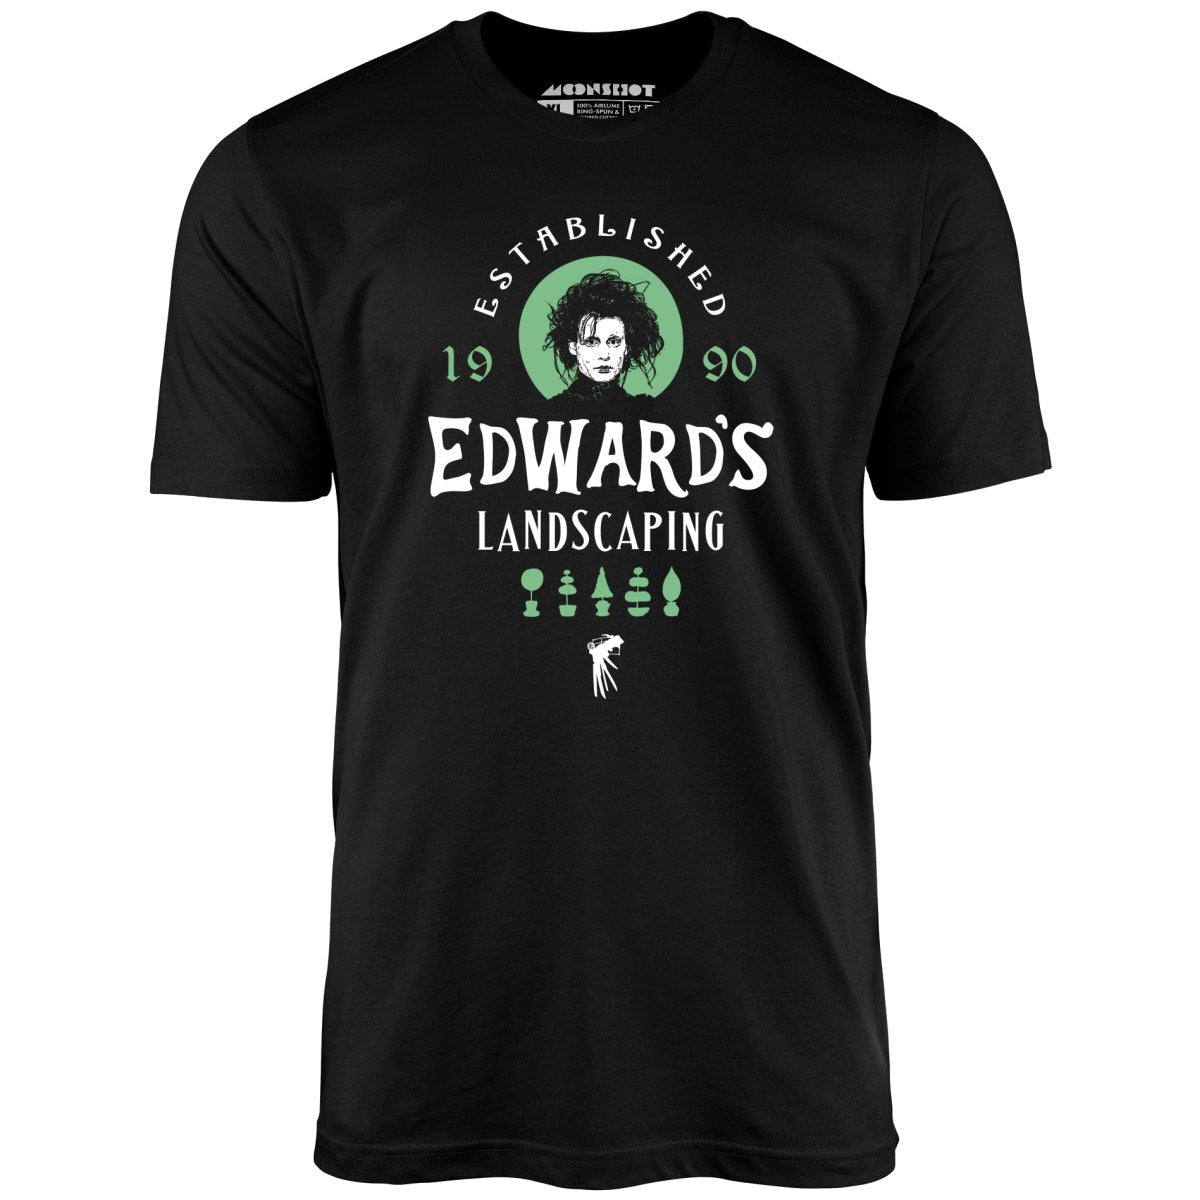 Edward's Landscaping - Unisex T-Shirt